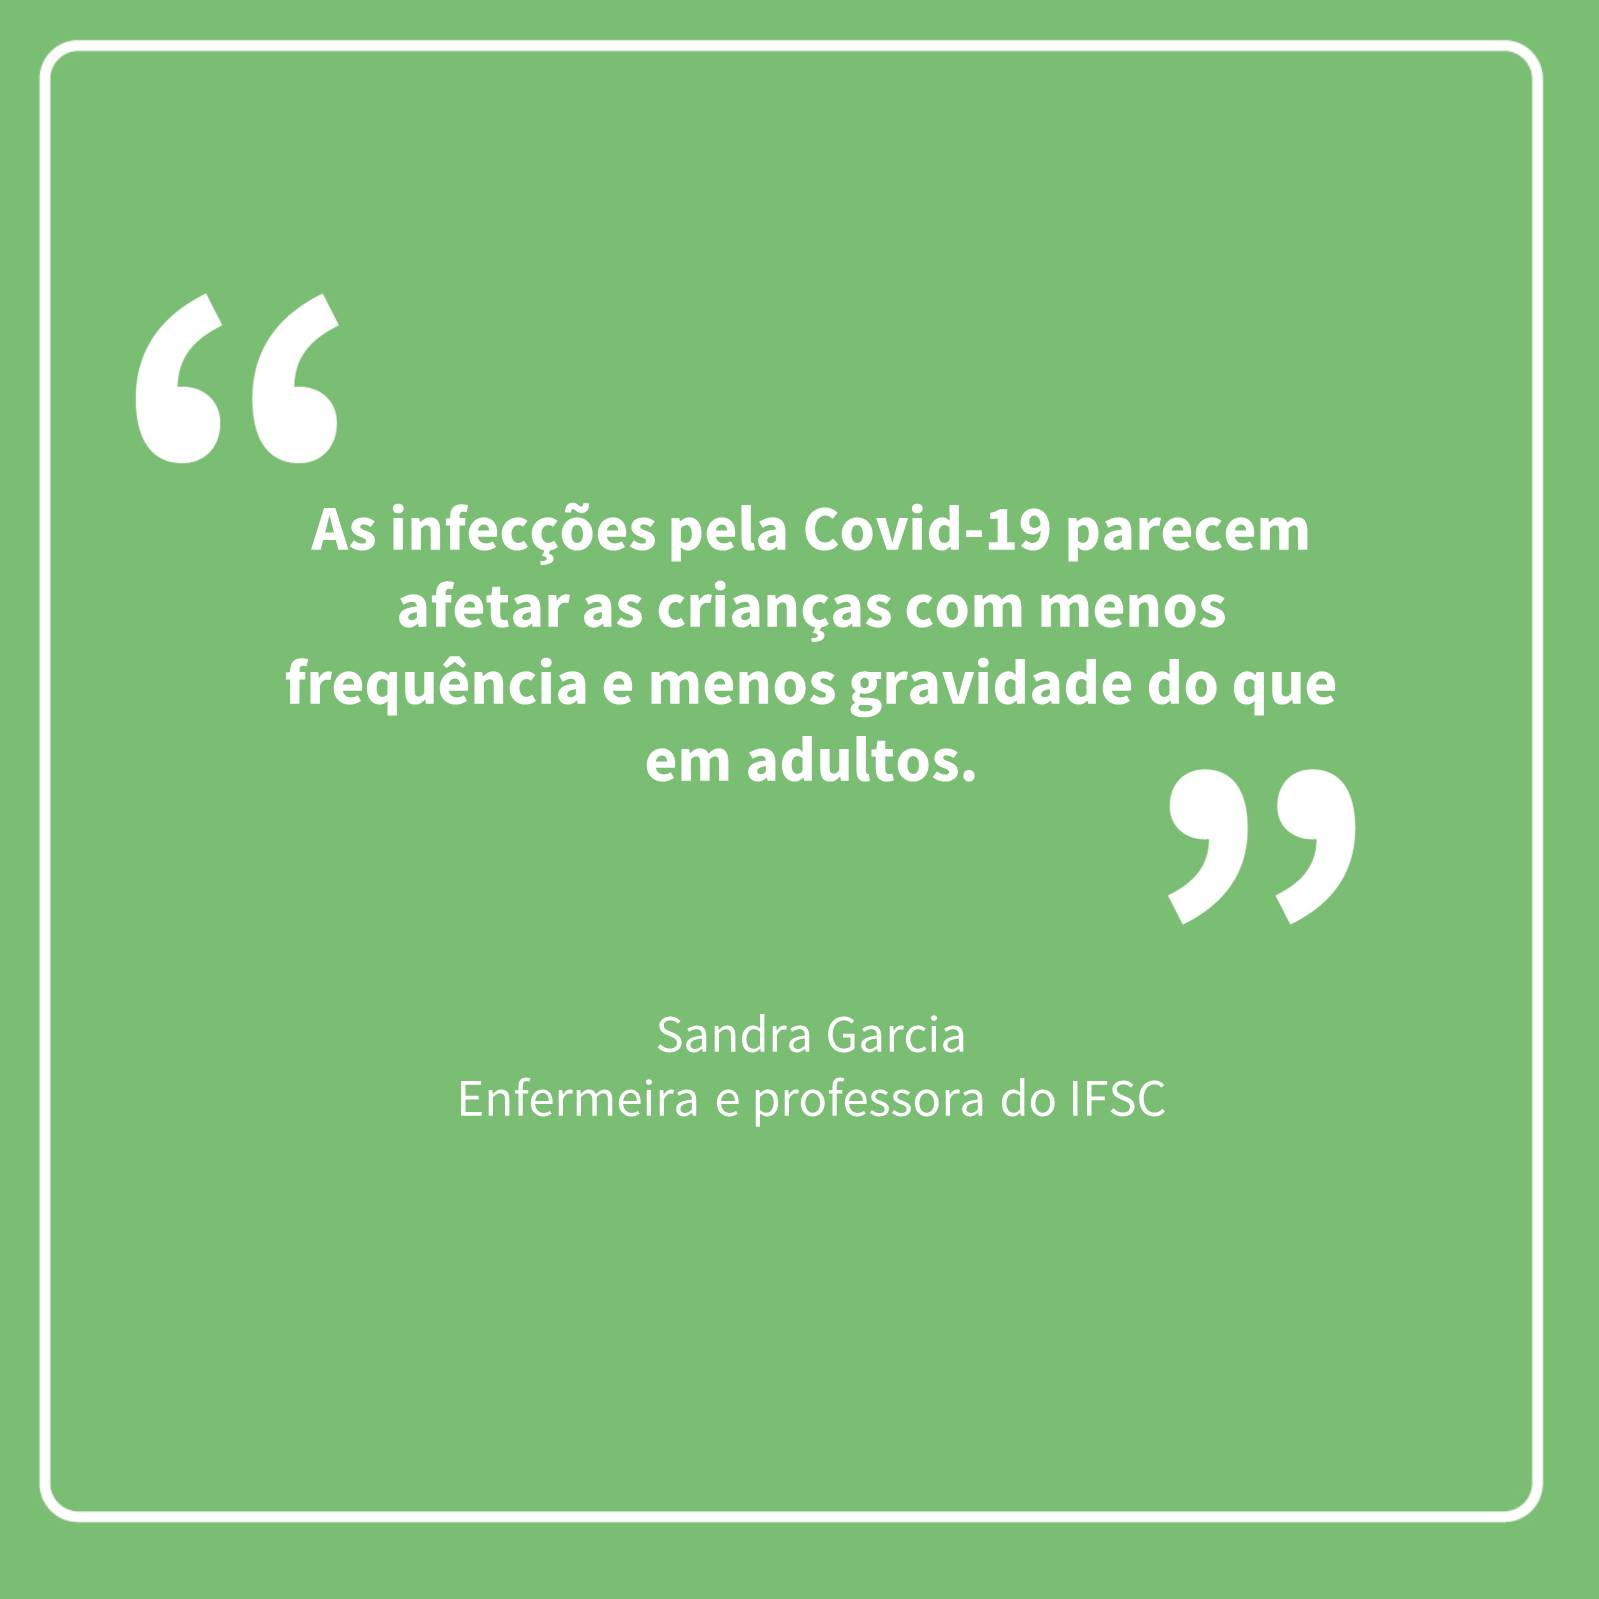 Citação da professora Sandra Garcia do IFSC - "As infecções pela COVID-19 parecem afetar as crianças com menos frequência e menos gravidade do que em adultos"